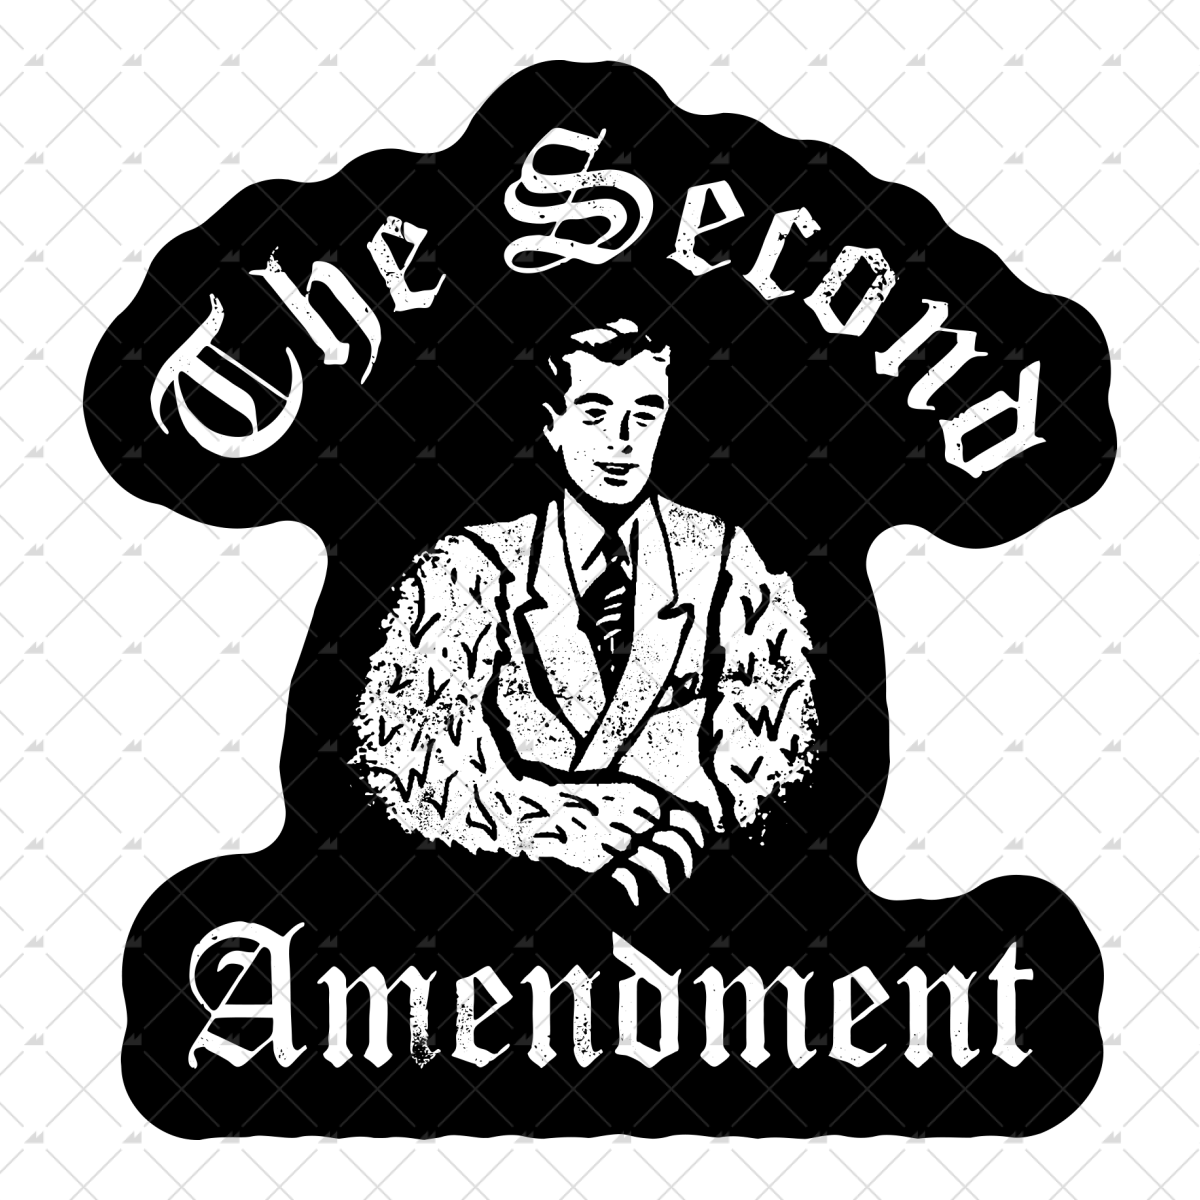 2nd Amendment - Bear Arms - Sticker